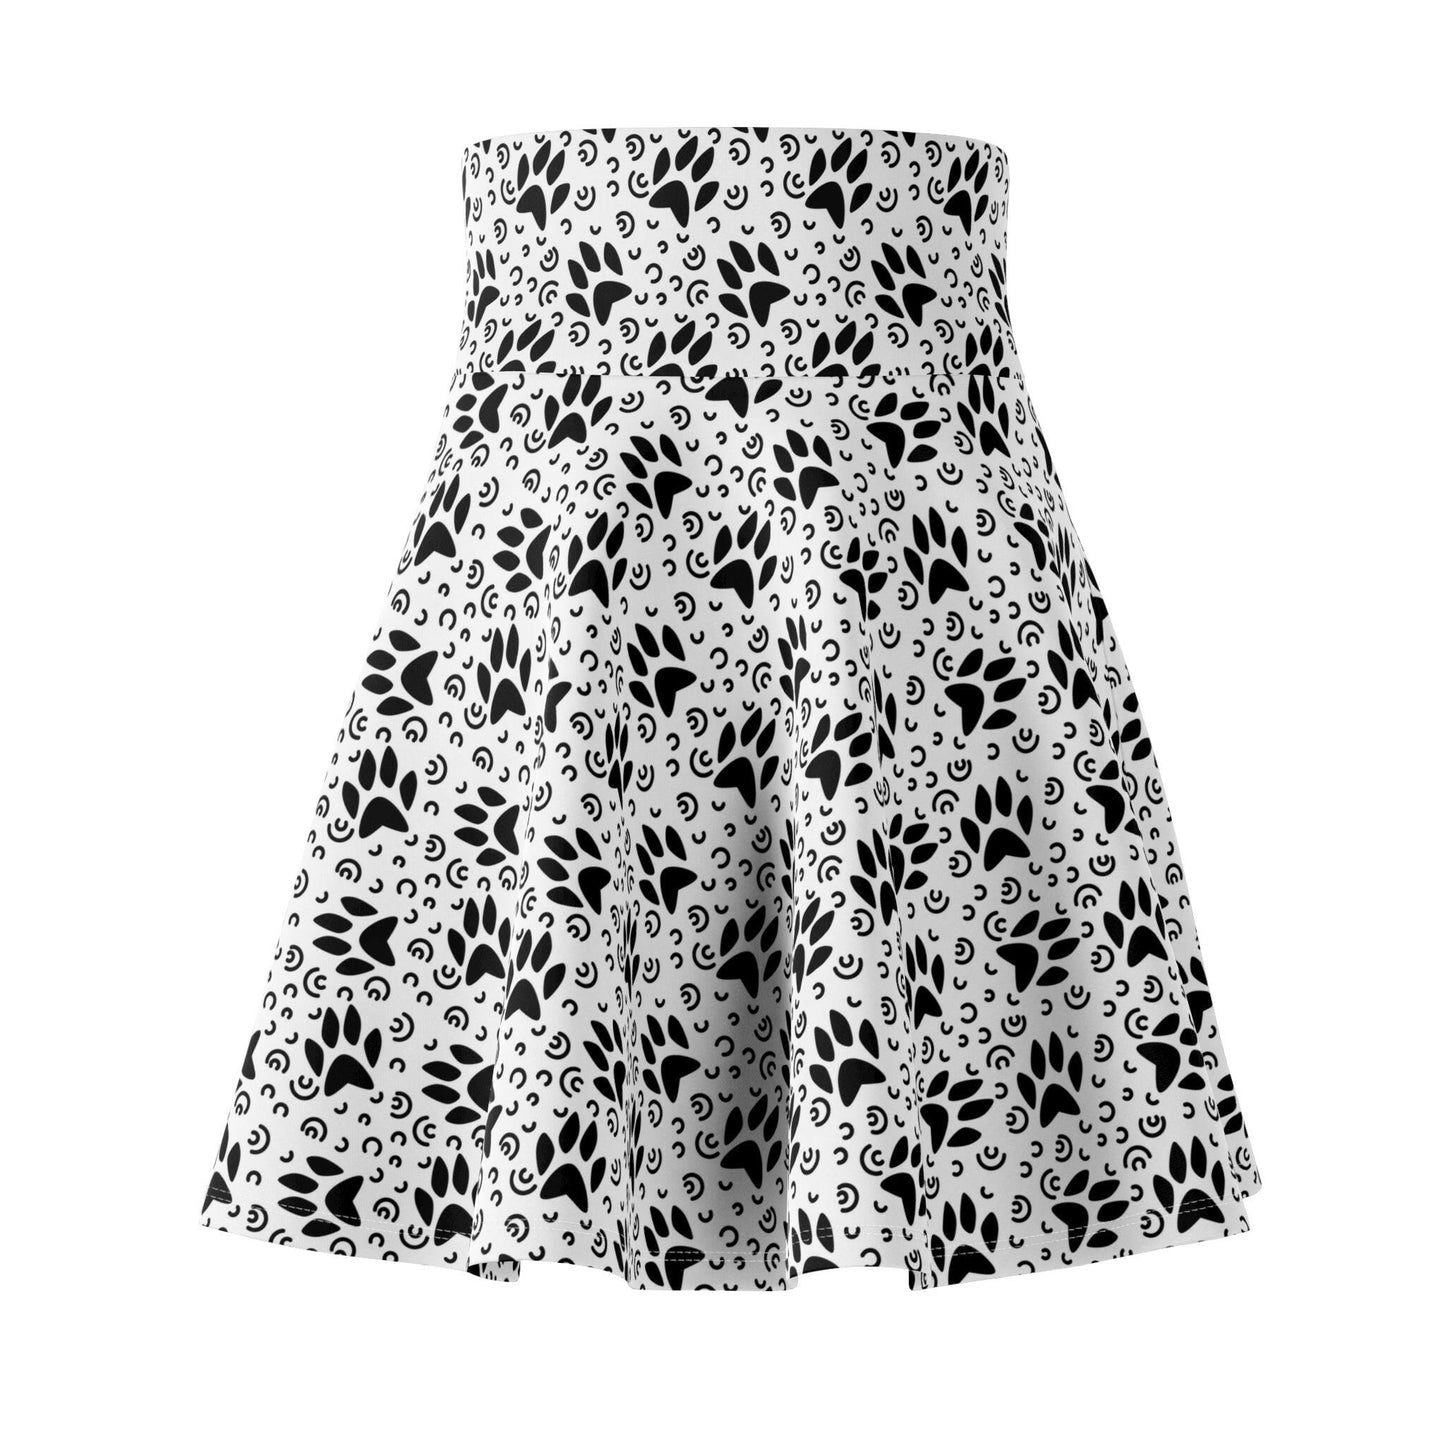 Black & White Women's Skater Skirt - All Over Prints - Epileptic Al’s Shop